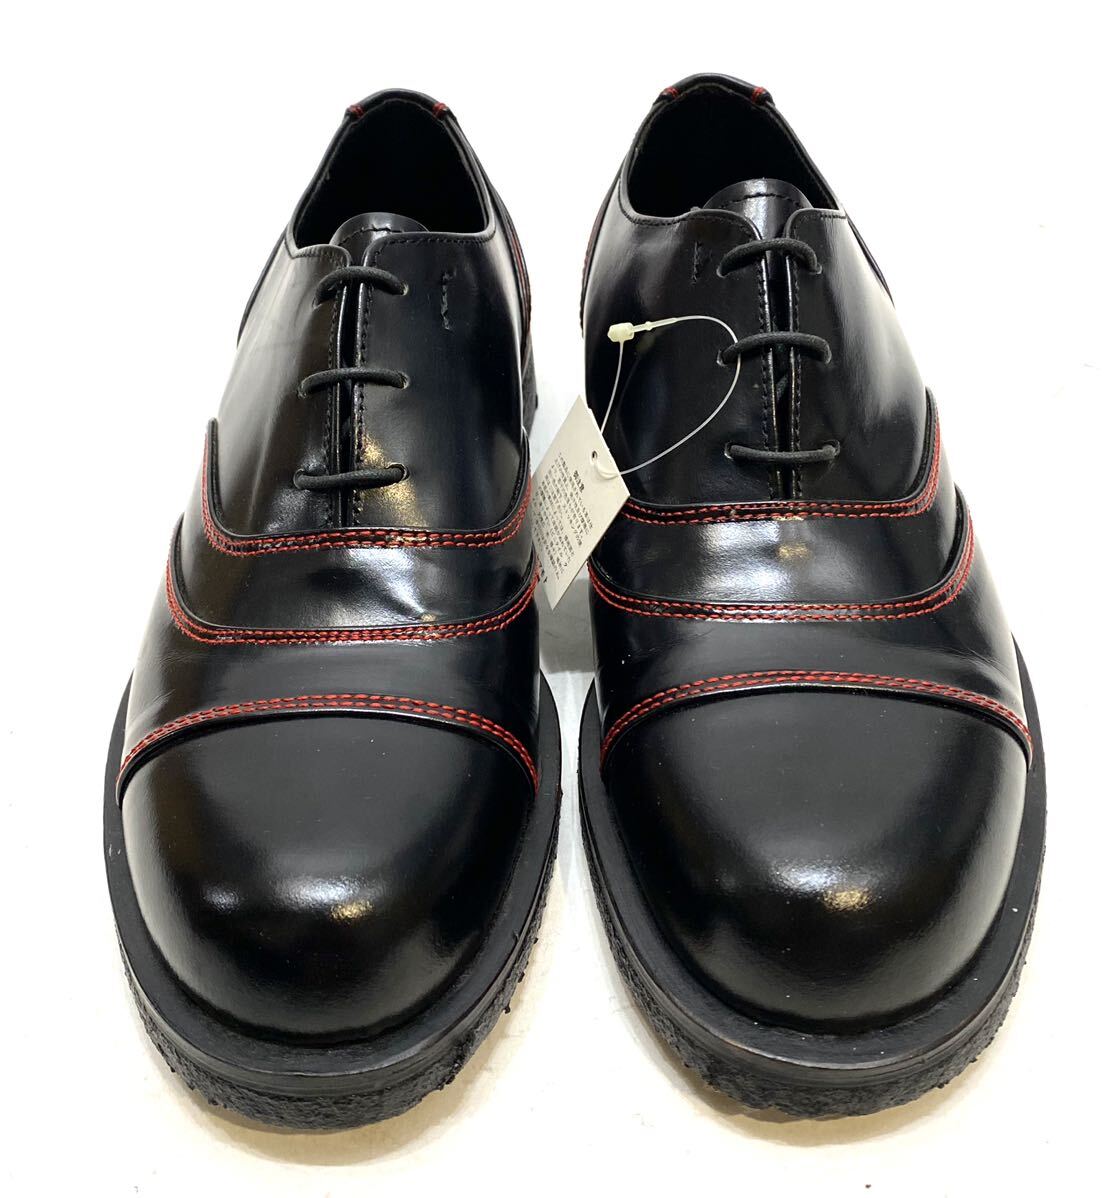 DEAD STOCK Y\'S for men стежок дизайн кожа обувь wise Yohji Yamamoto кожа обувь leather shoes MY-A33-705 ботинки чёрный черный M